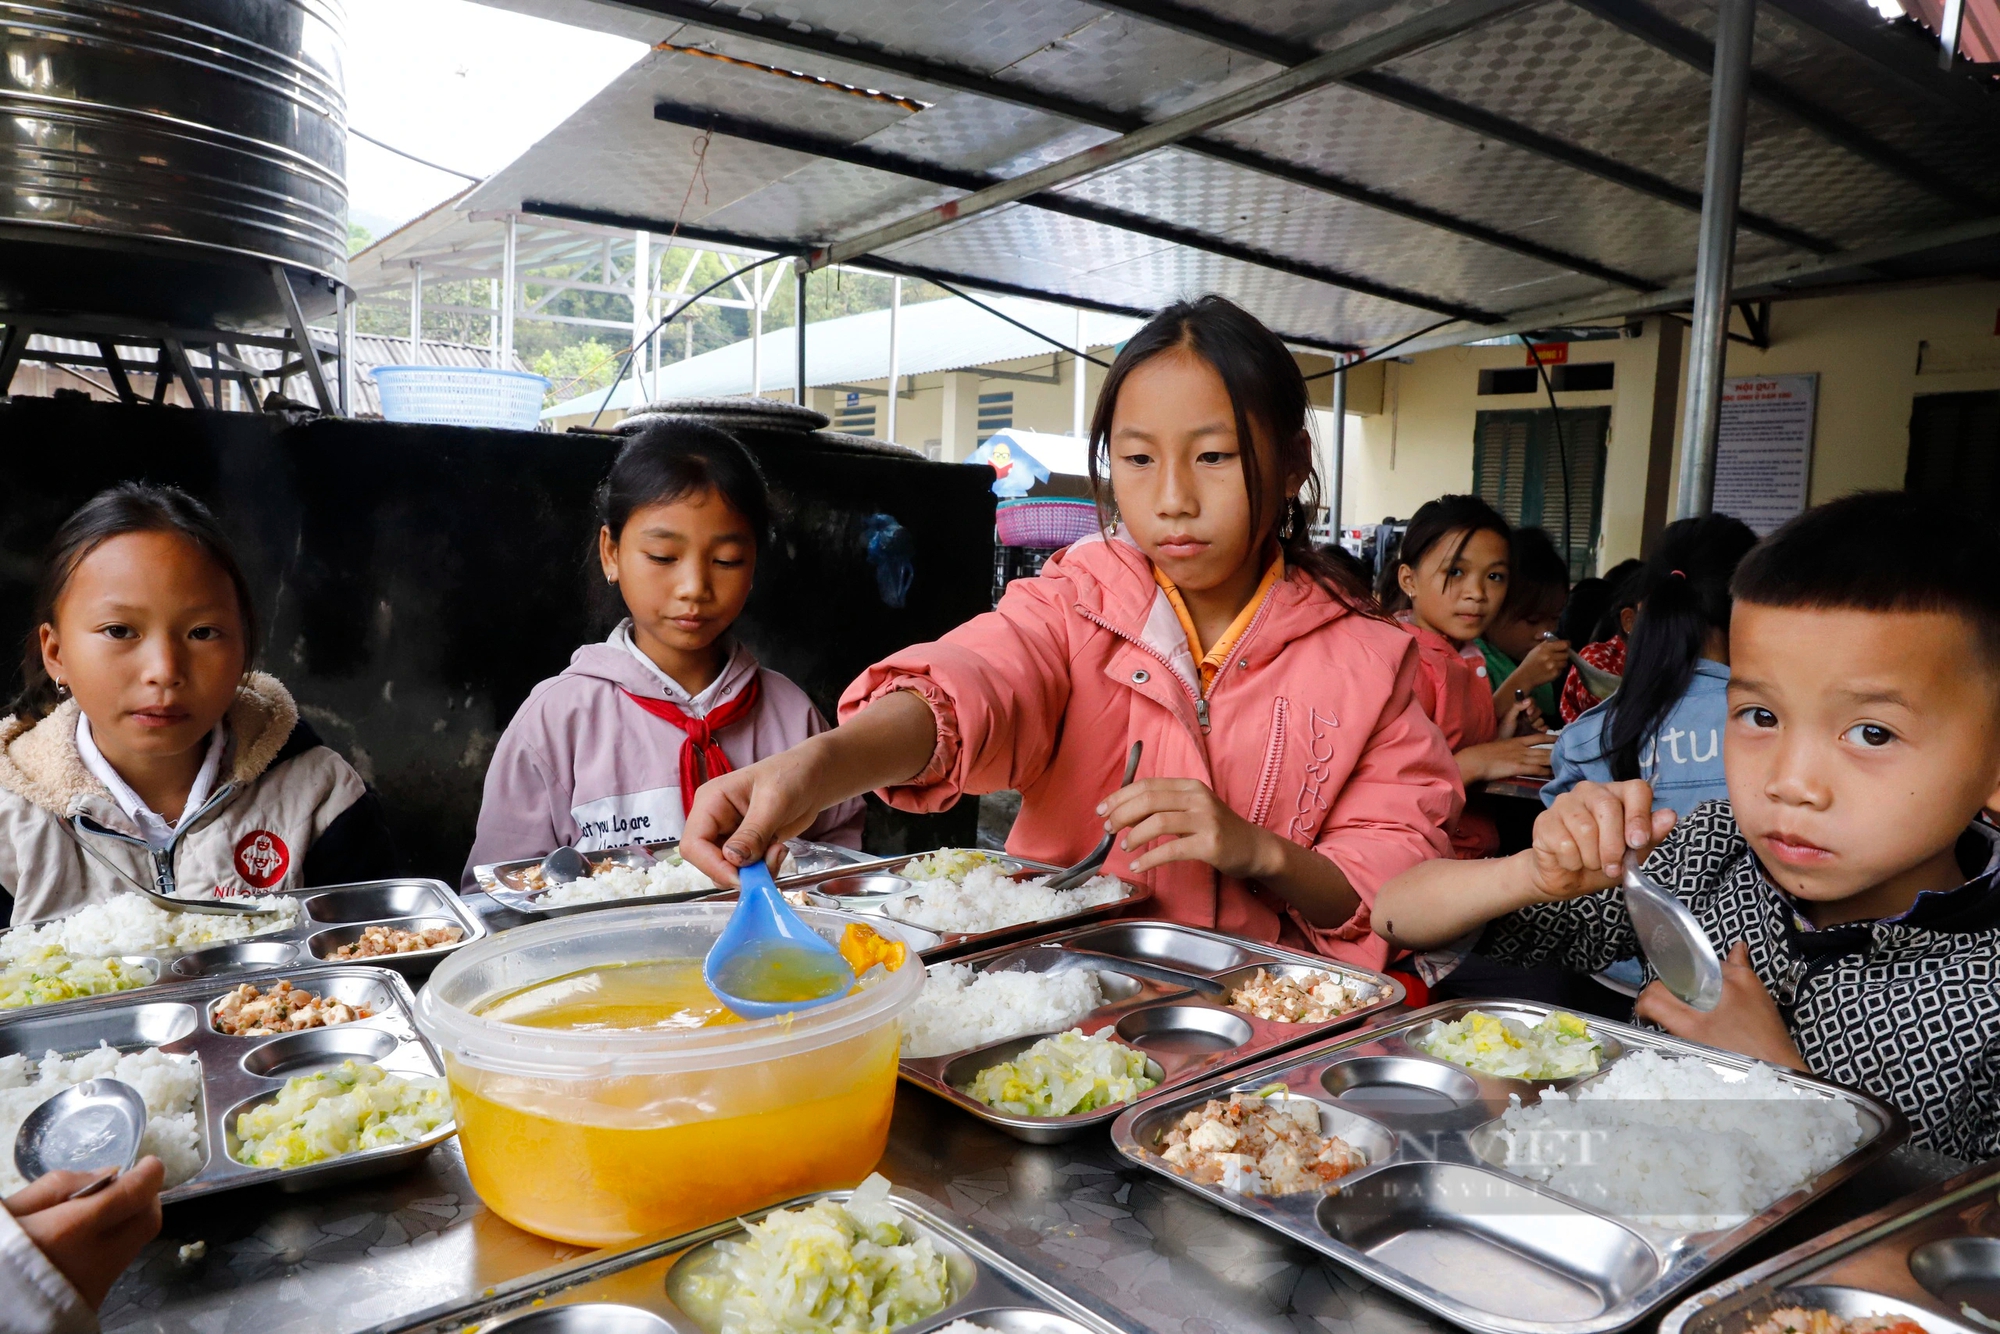 Cận cảnh bữa ăn 8.000 đồng của trẻ em vùng rẻo cao biên cương Đông Bắc- Ảnh 6.